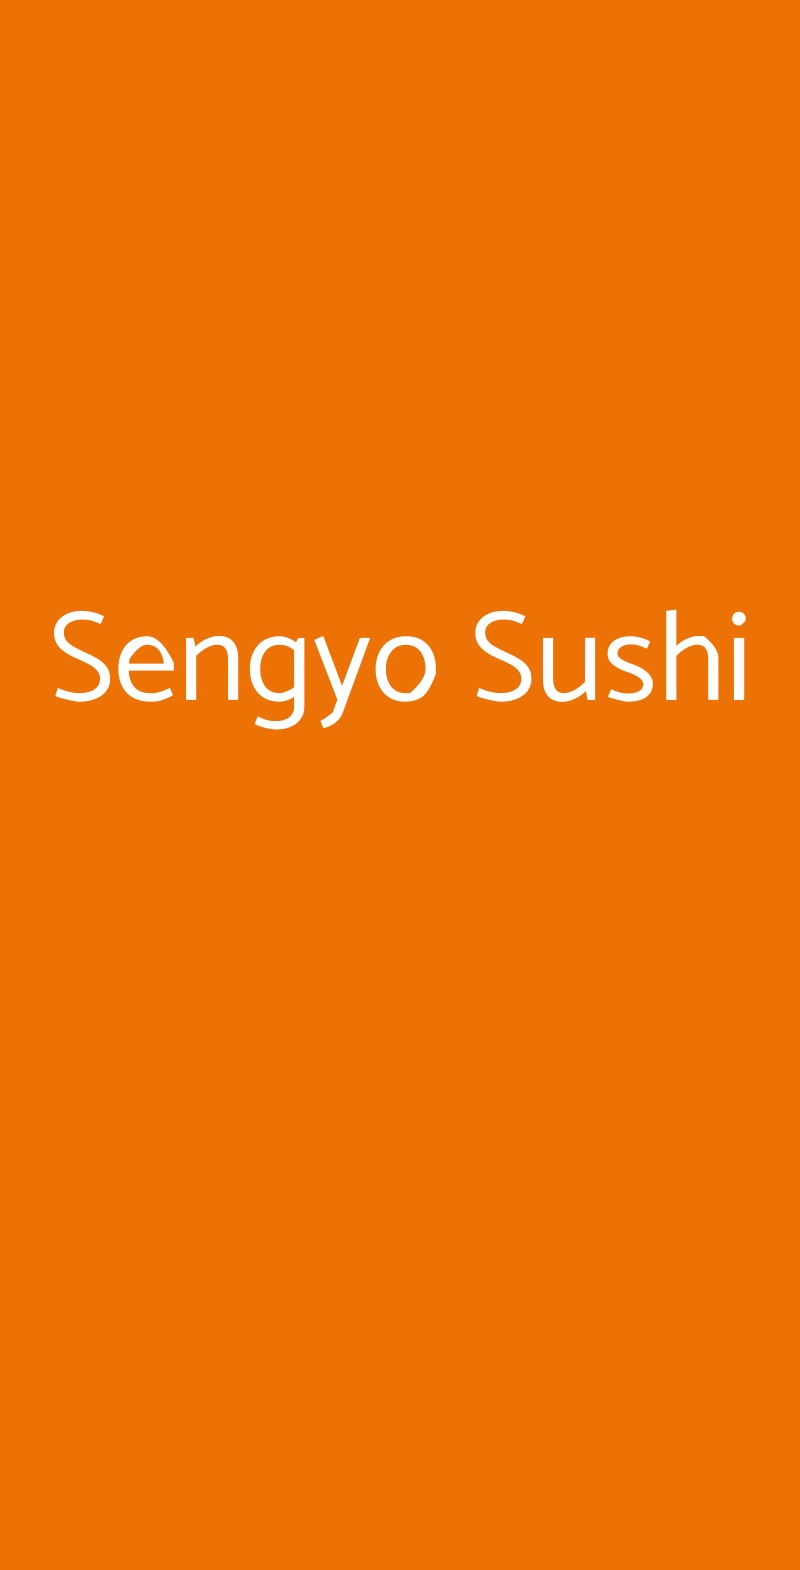 Sengyo Sushi Milano menù 1 pagina